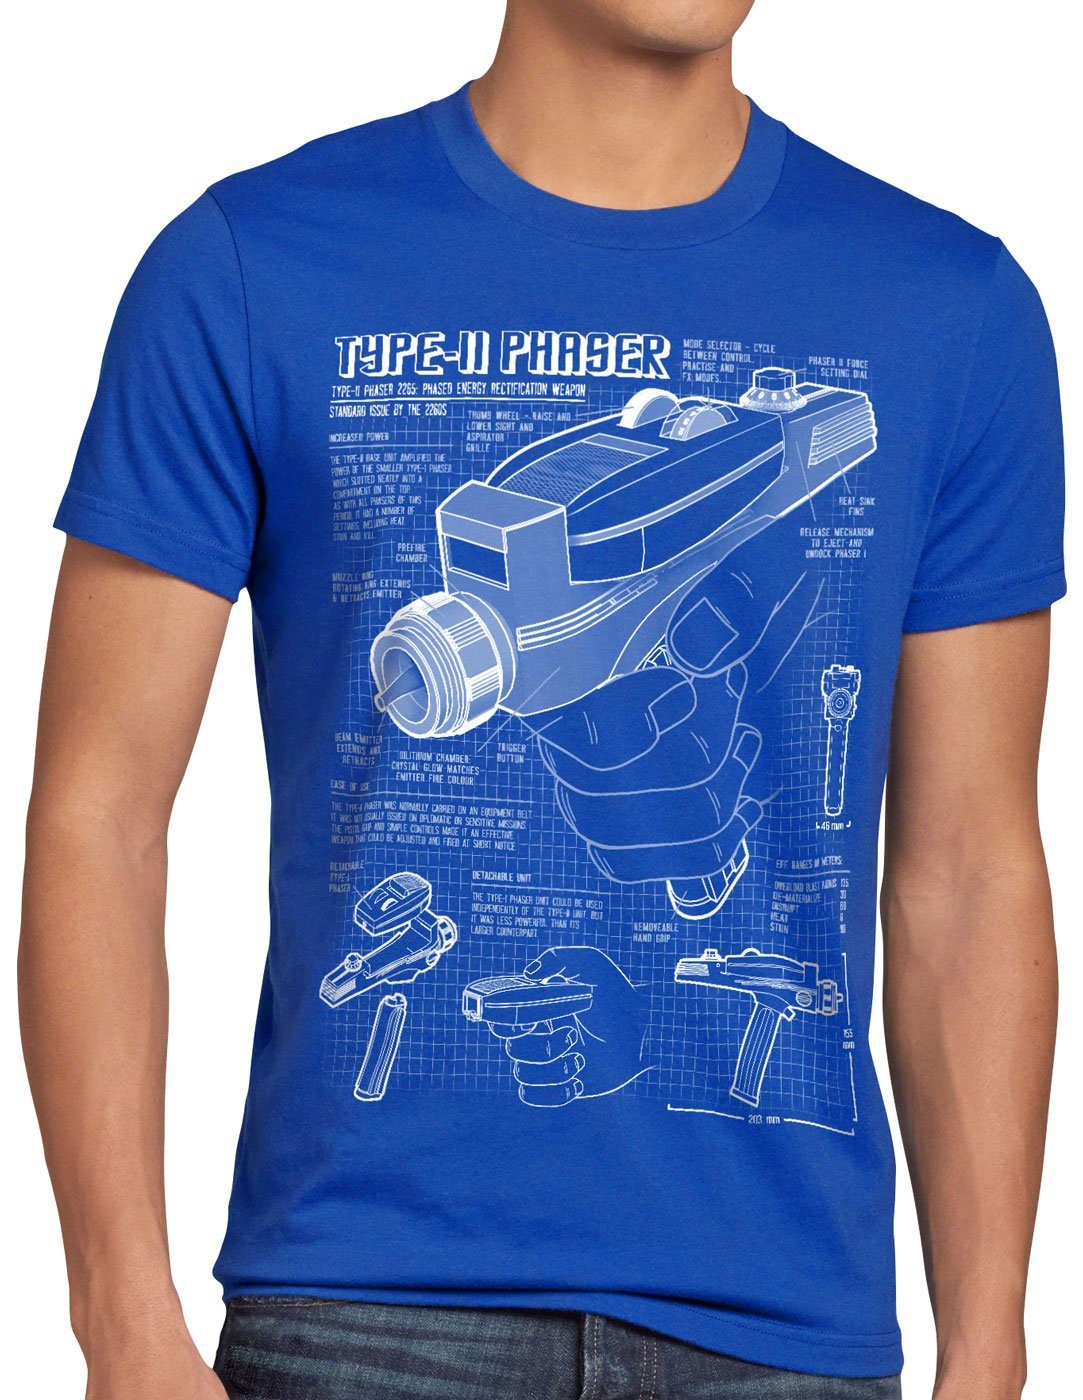 Herren Print-Shirt trekkie T-Shirt 2265 star Phaser style3 trek Blaupause NCC-1701